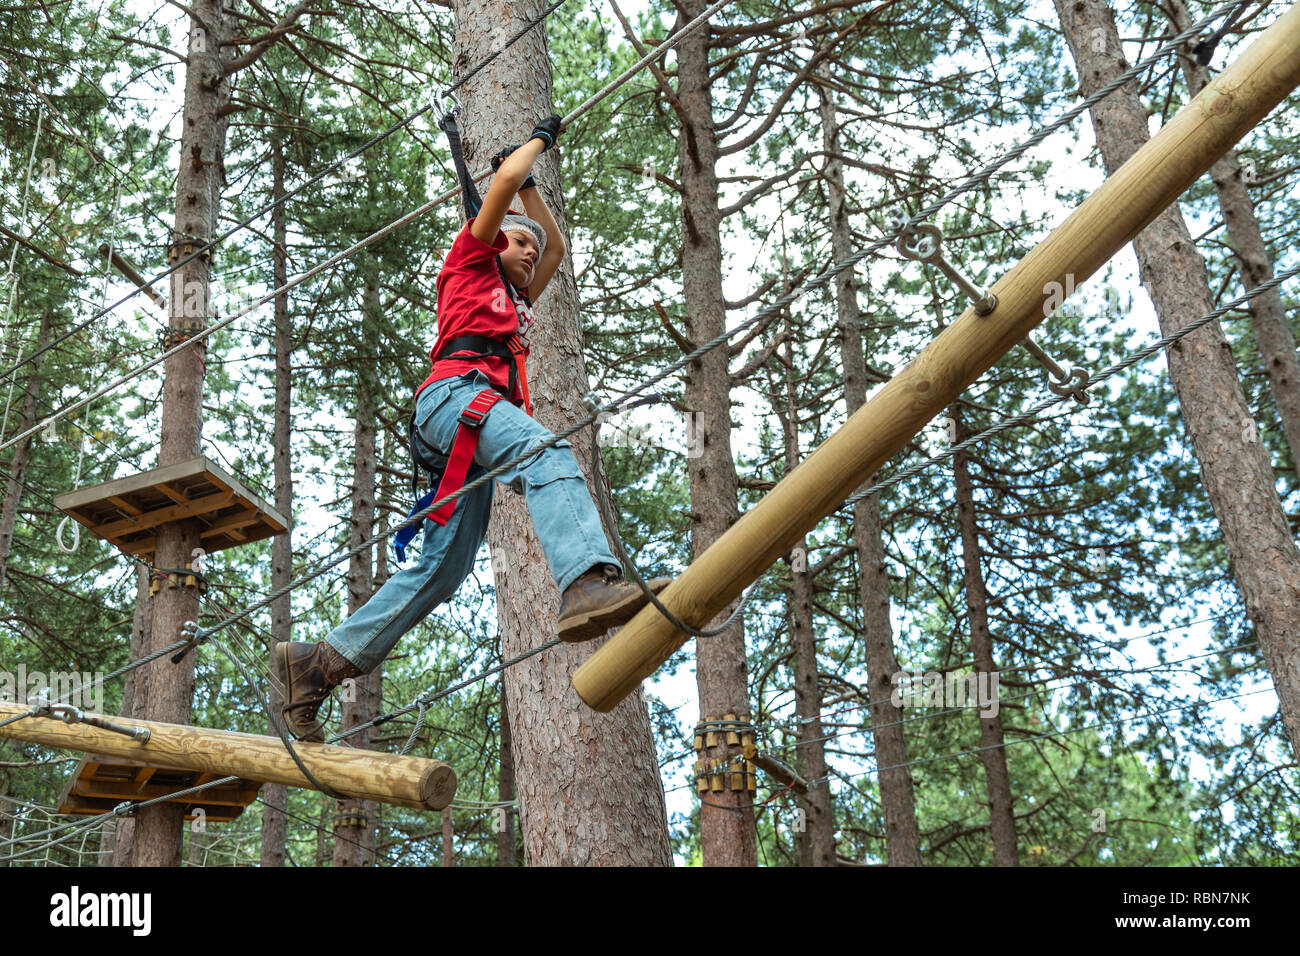 Garçon avec des harnais de sécurité en escalade parc aventure dans la forêt de pins. Guardiagrele, .Abruzzo, Italie Banque D'Images